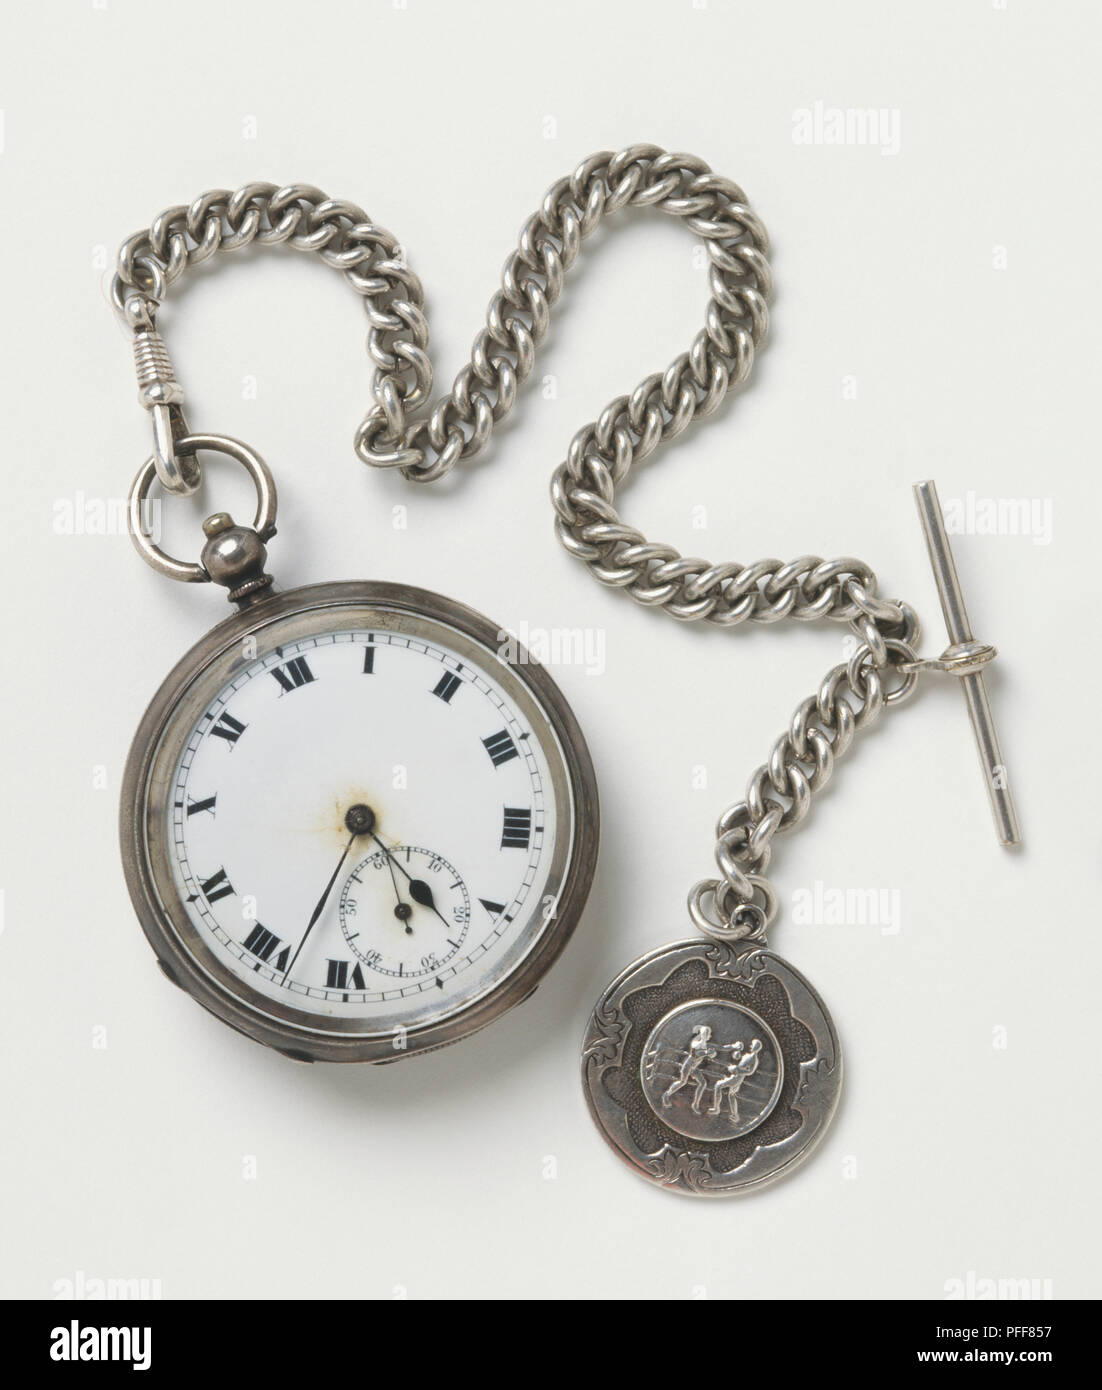 Orologio da tasca con numeri romani, chunky catena d'argento, medaglia d'argento che mostra due pugili attaccato all'altra estremità Foto Stock